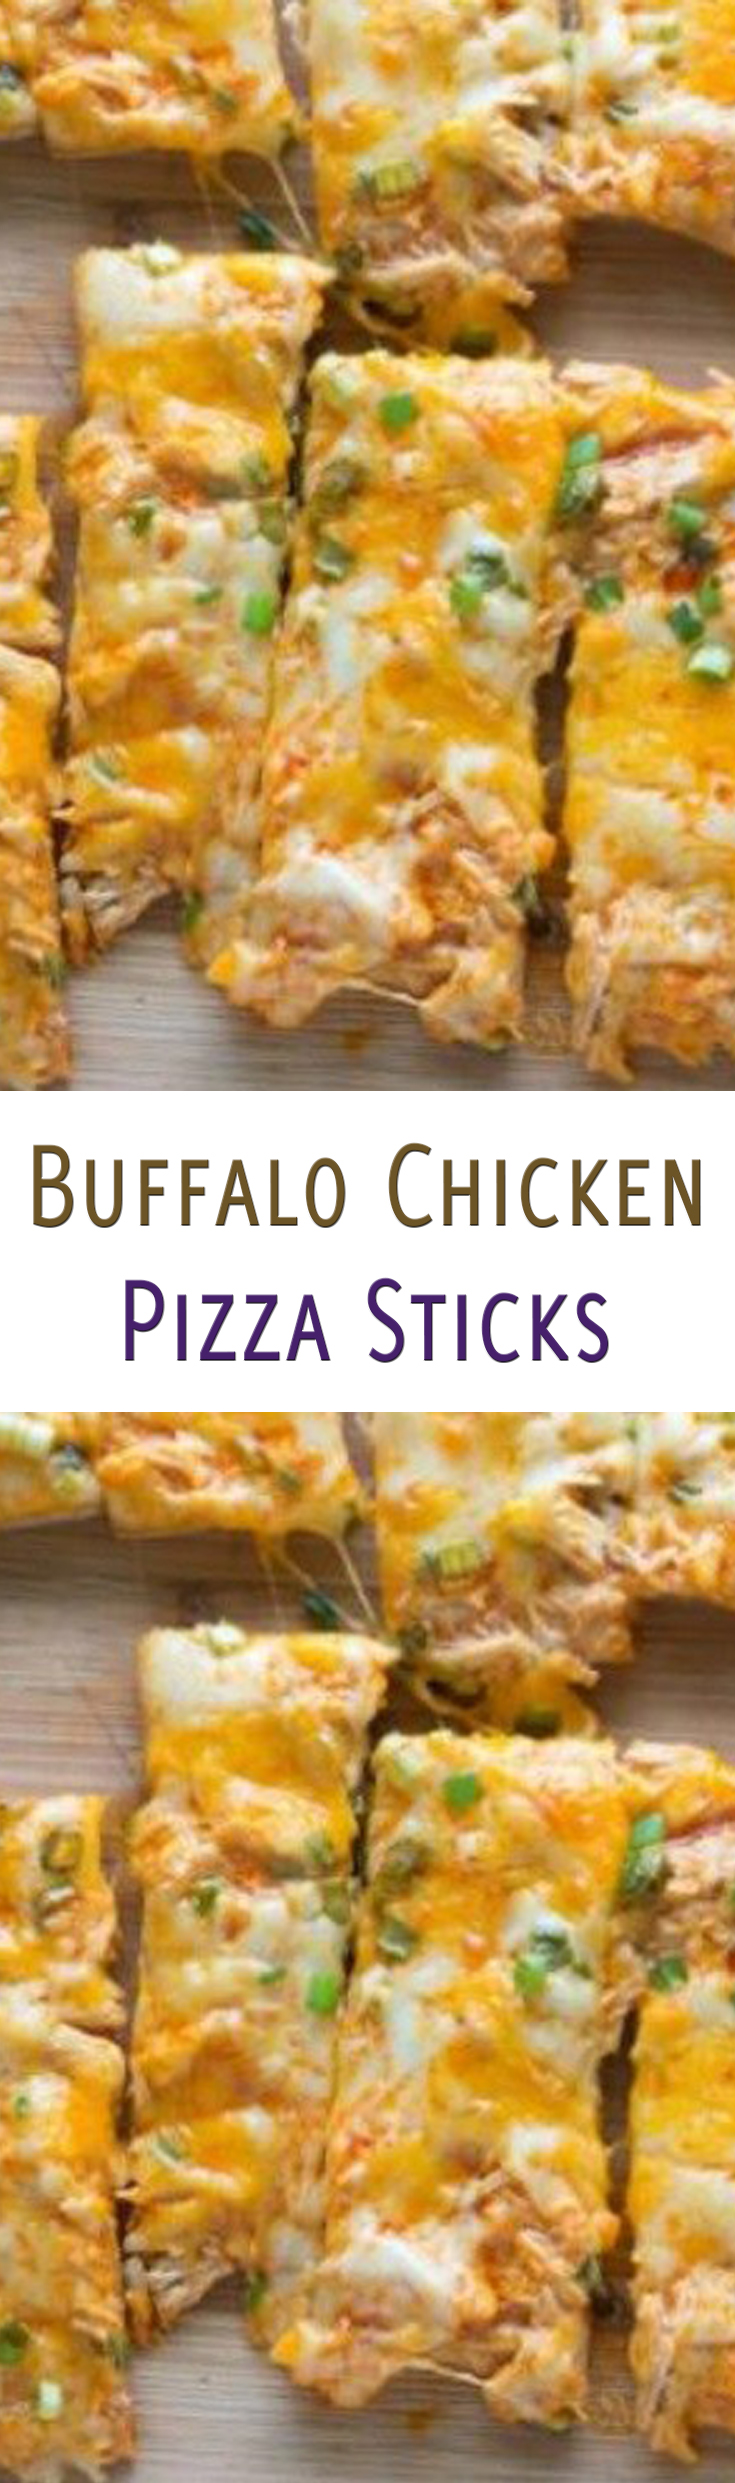 Buffalo Chicken Pizza Sticks Recipe